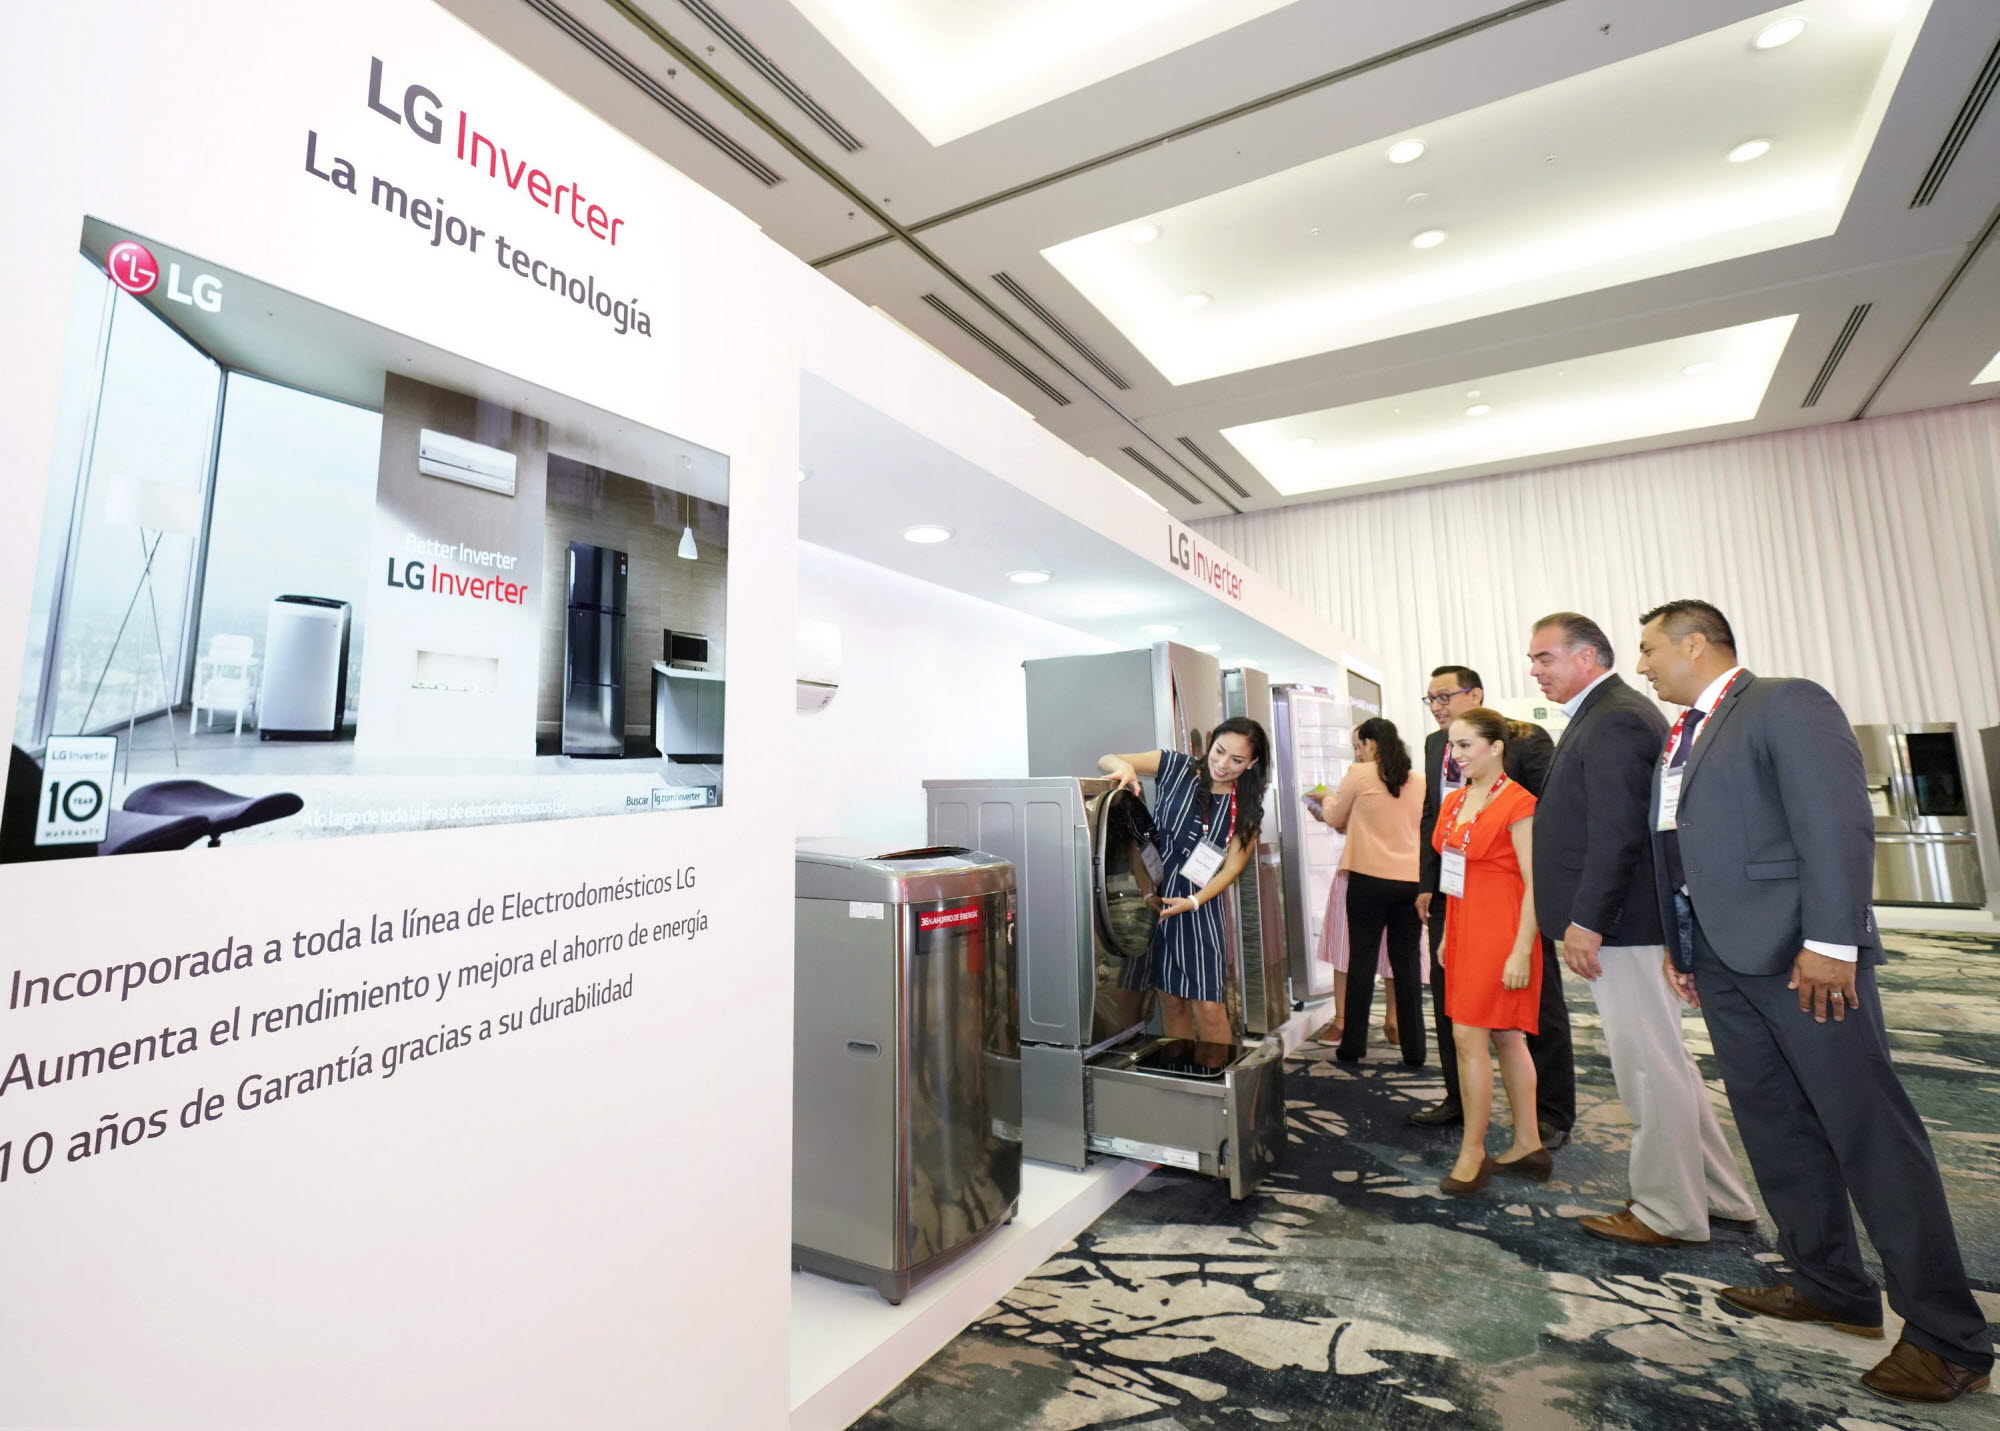 인공지능 ‘LG 씽큐’ 중남미 거래선 사로잡았다03: LG전자가 17일부터 20일까지 멕시코 칸쿤에서 ‘LG 이노페스트’를 열고 혁신 제품을 대거 선보였다. LG 이노페스트 참가자들이 고효율, 고성능, 저소음 등 뛰어난 장점을 지닌 ‘인버터 기술’을 적용한 제품을 살펴보고 있다. 